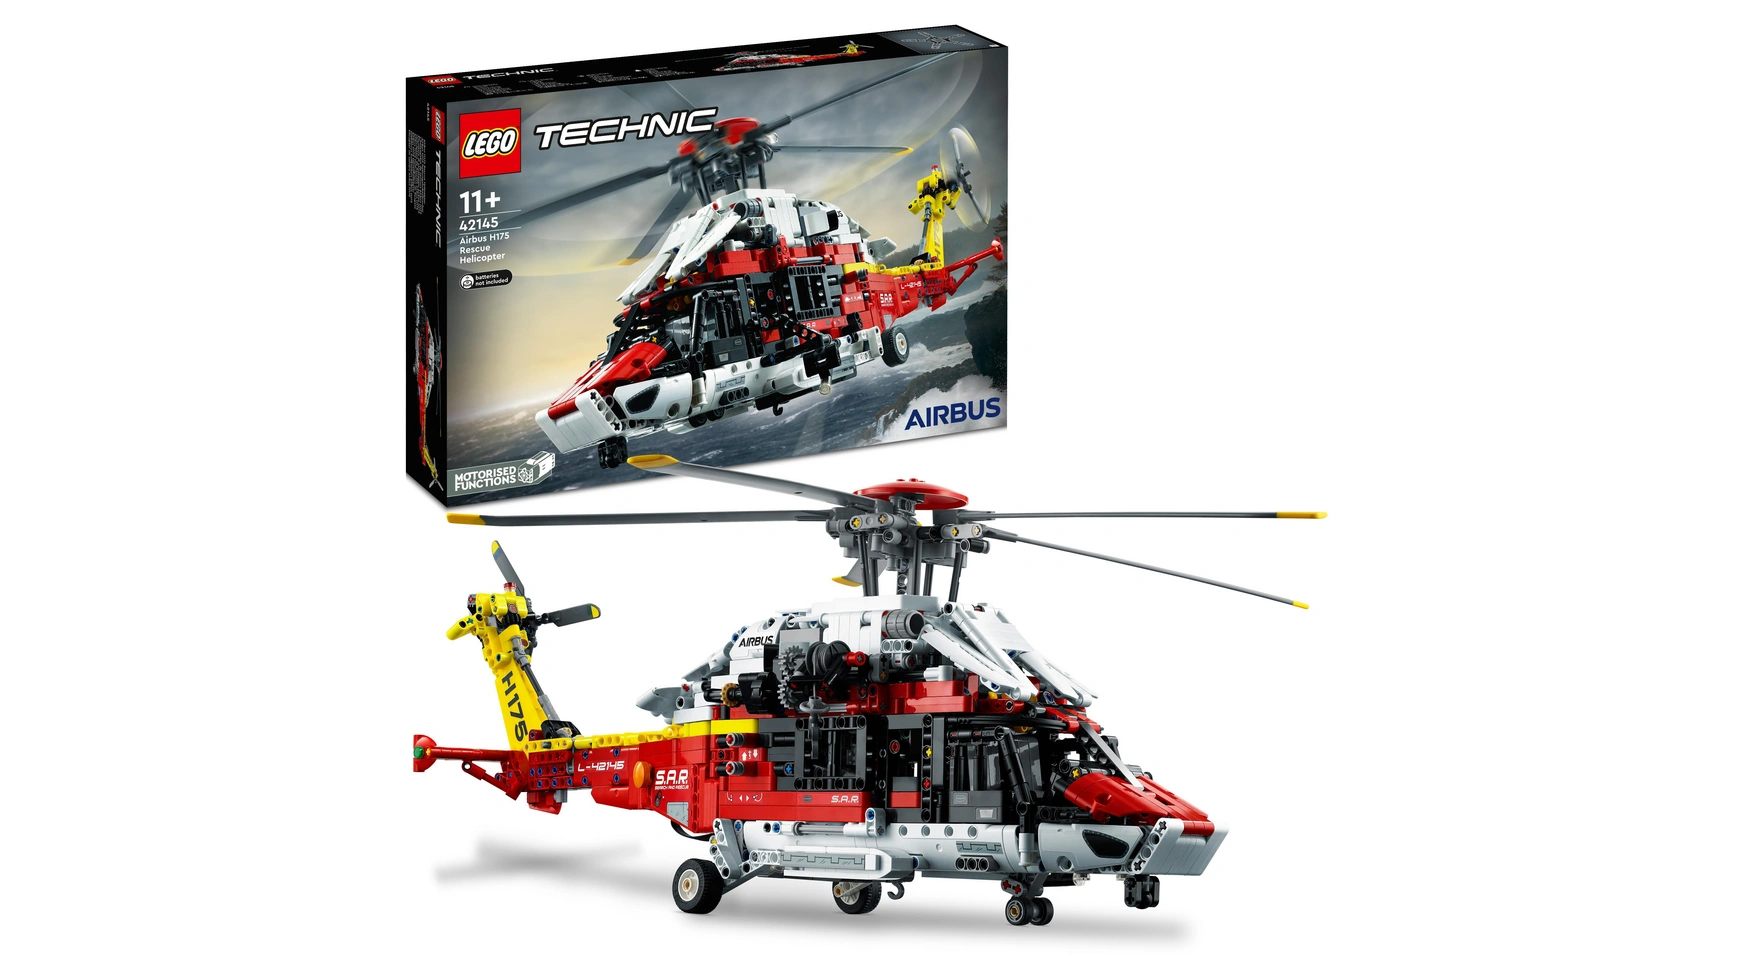 Lego Technic Набор моделей спасательного вертолета Airbus H175 конструктор lego technic 42145 спасательный вертолет airbus h175 2001 дет